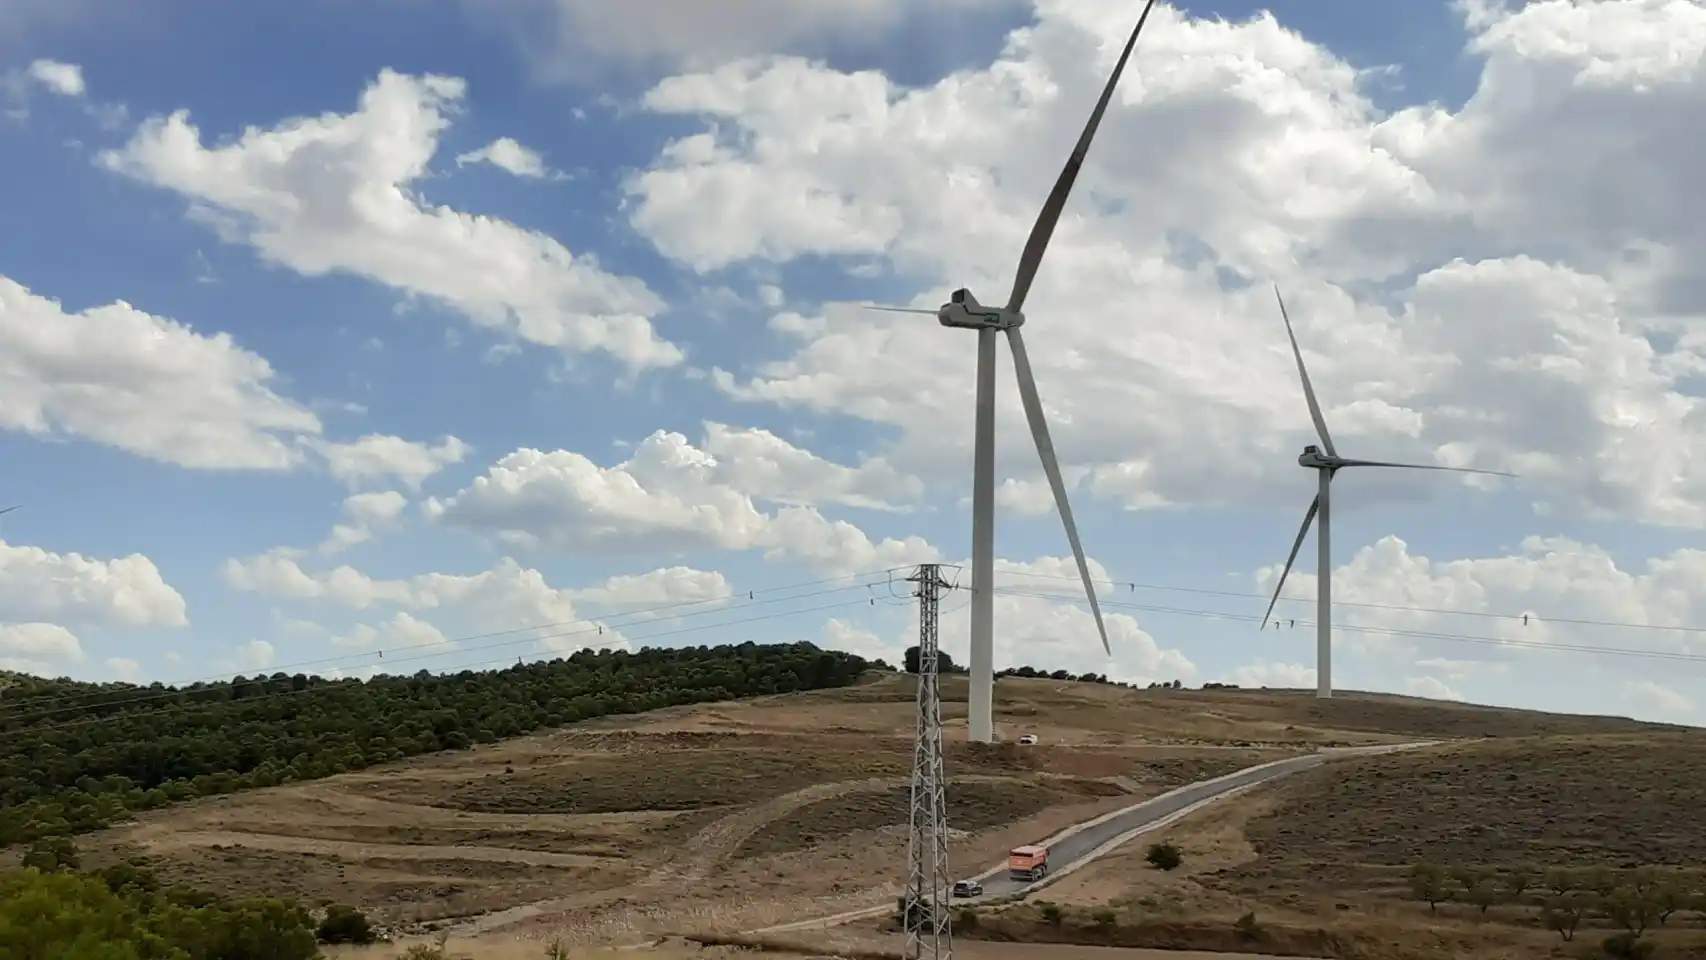 energias renovables galicia ministerio transicion ecologica y reto demografico 533208422 164234747 1706x960